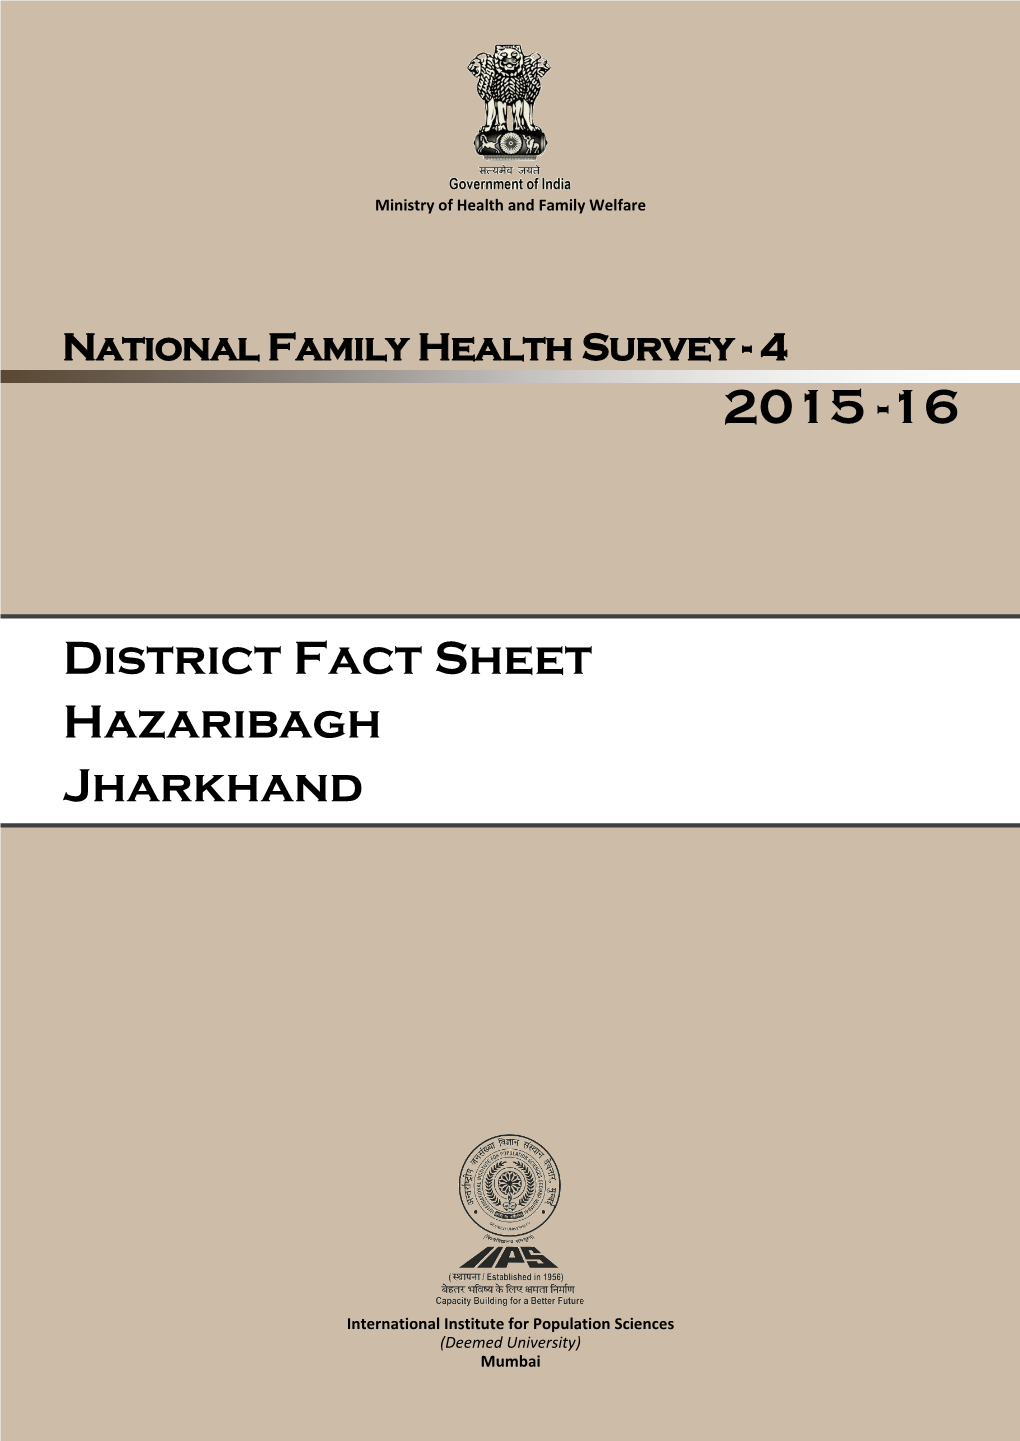 District Fact Sheet Hazaribagh Jharkhand